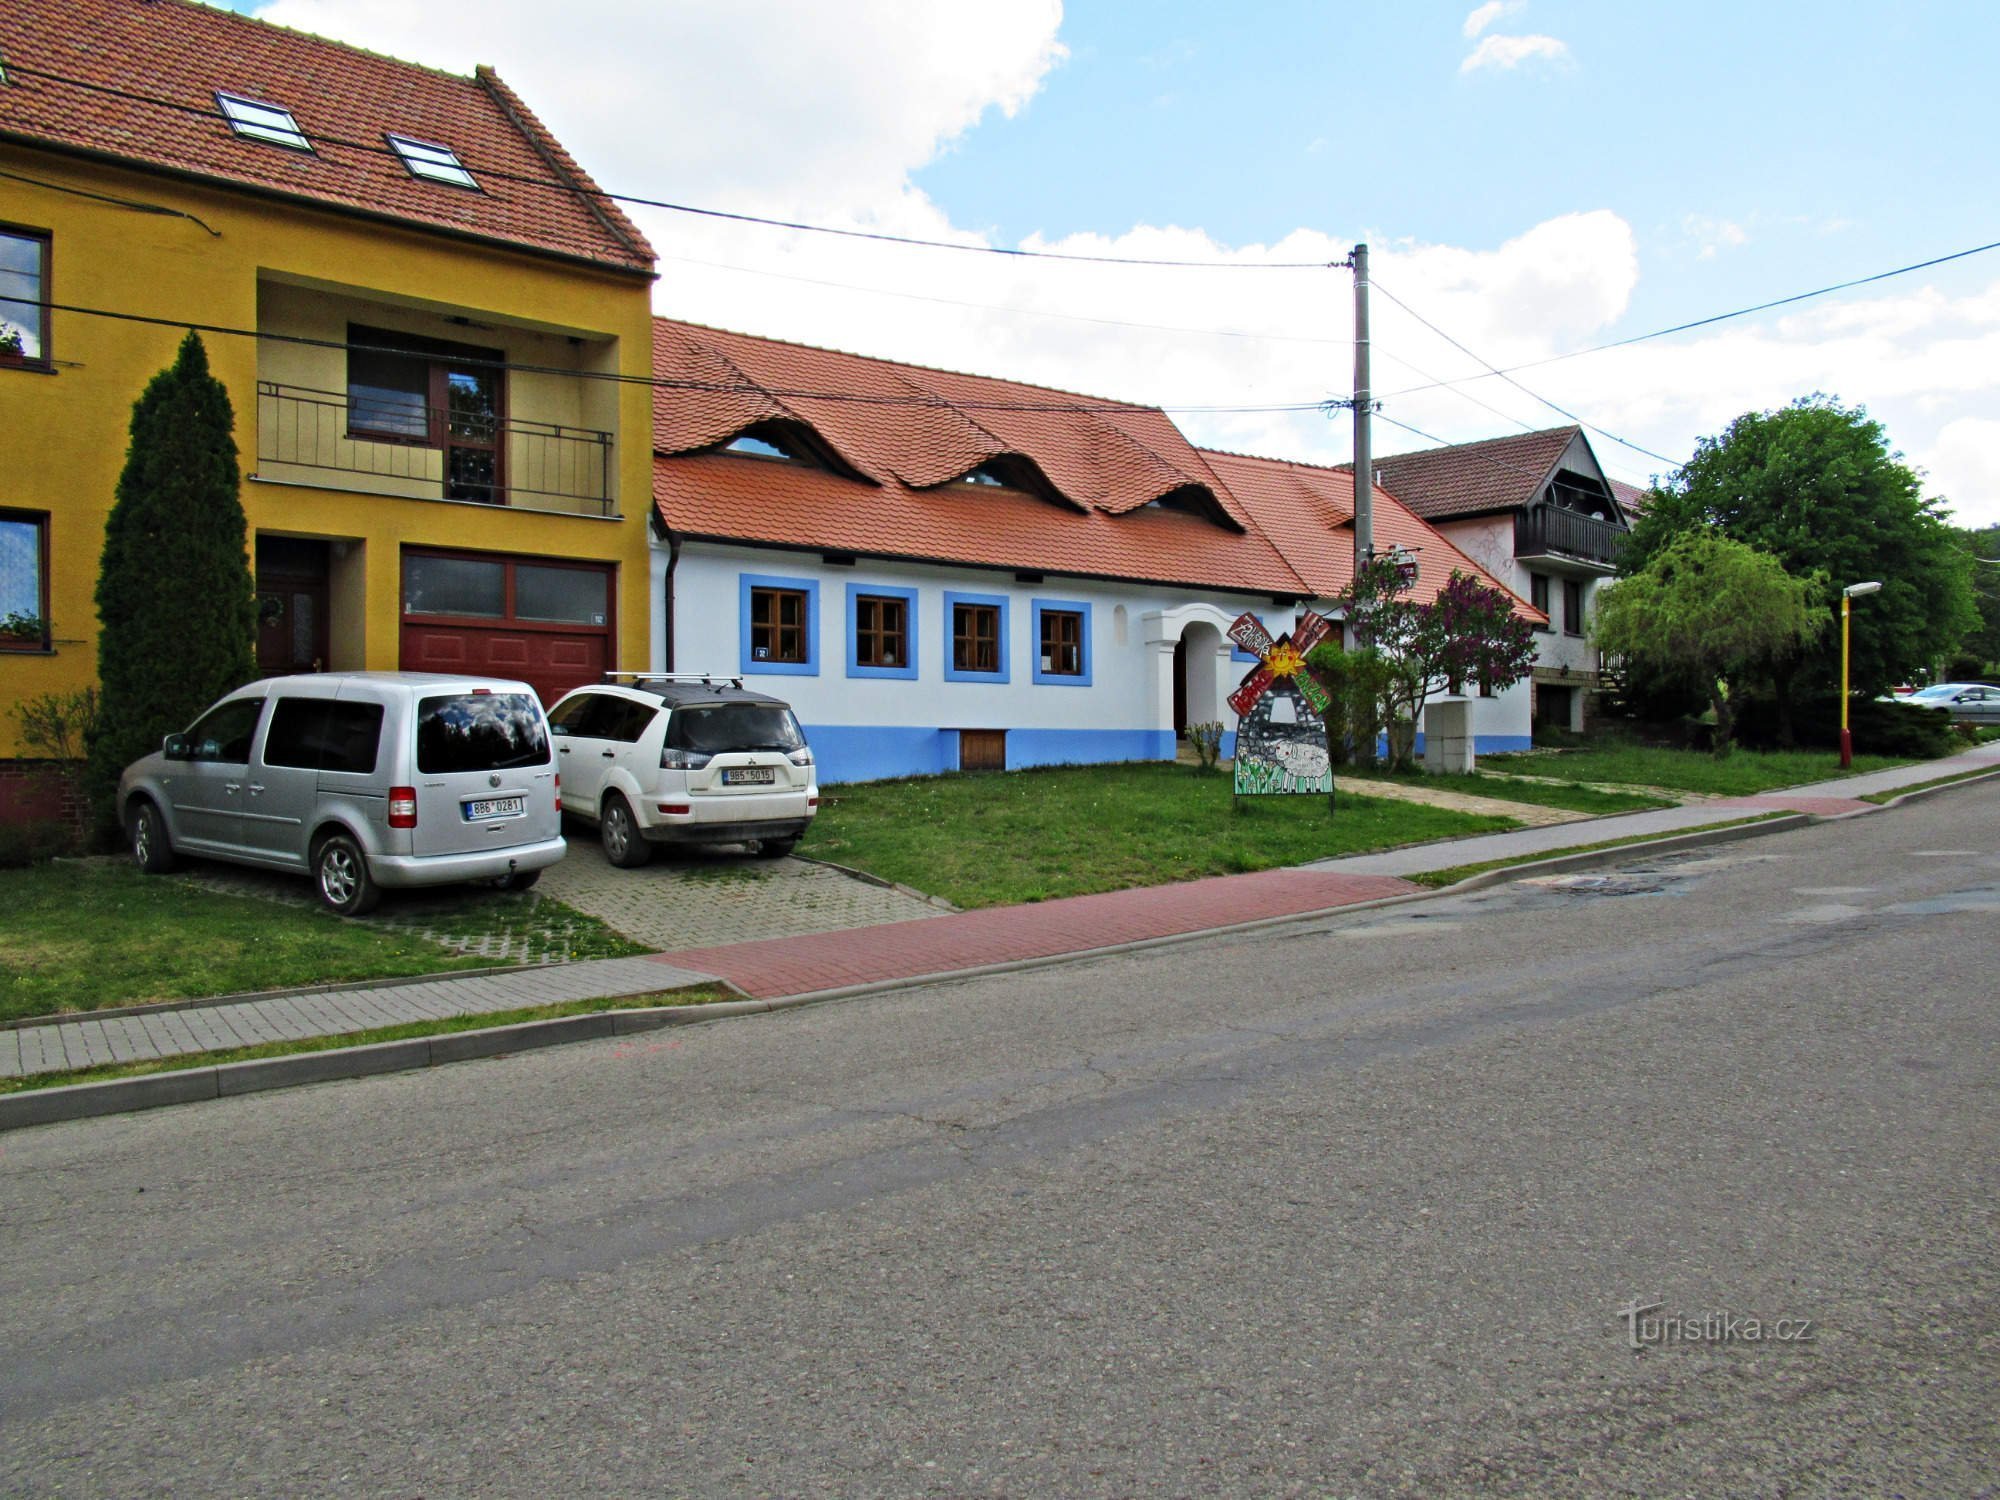 Pension U větrného mlýna in the village of Kuželov in Slovácko